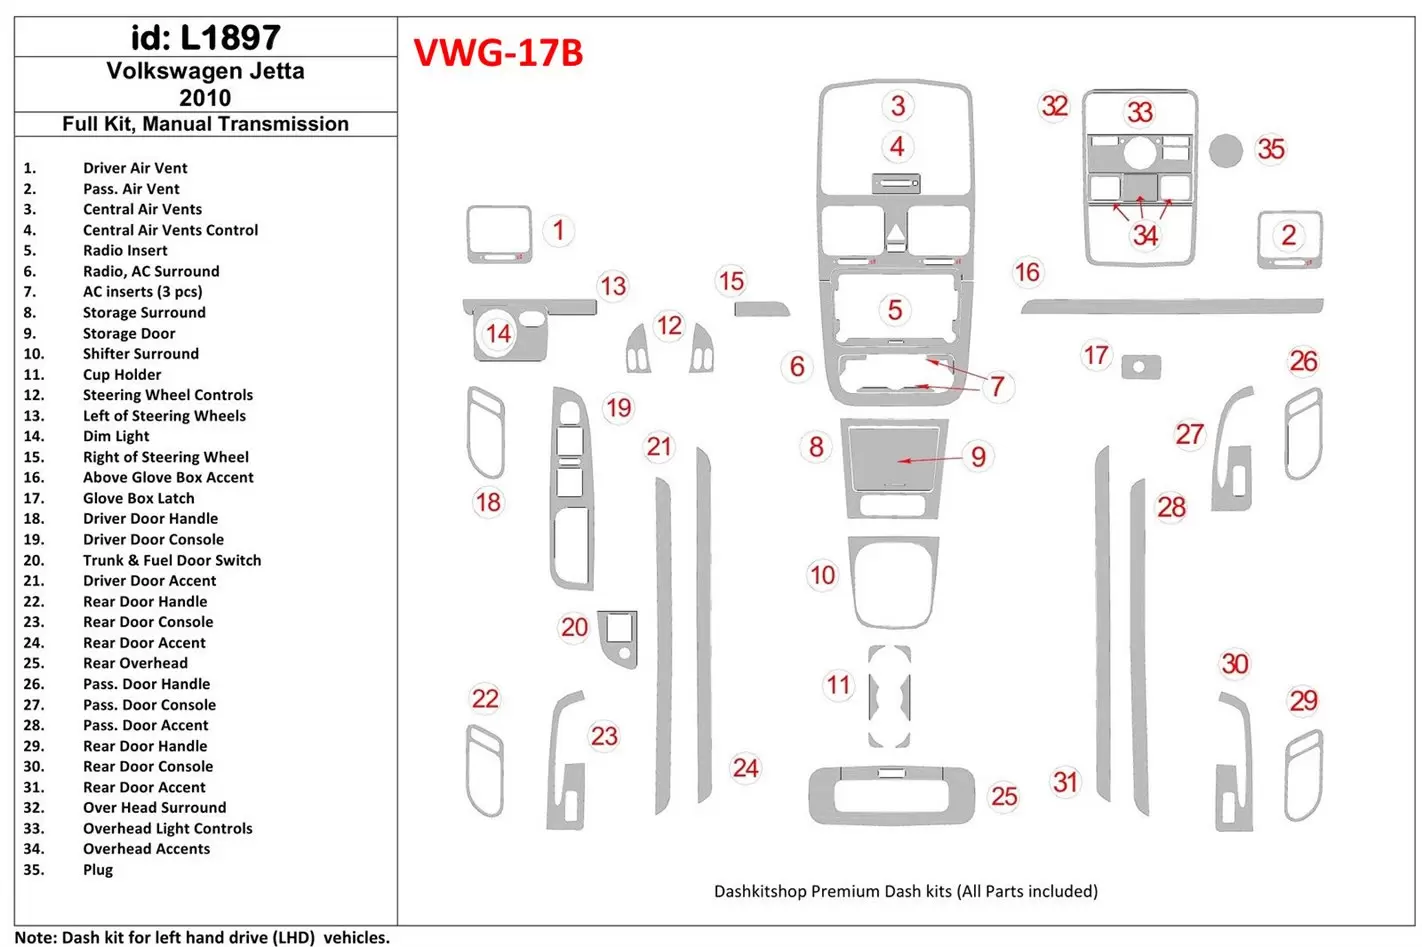 Volkswagen Jetta 2010-2010 Ensemble Complet, boîte manuelle Box BD Kit la décoration du tableau de bord - 1 - habillage decor de